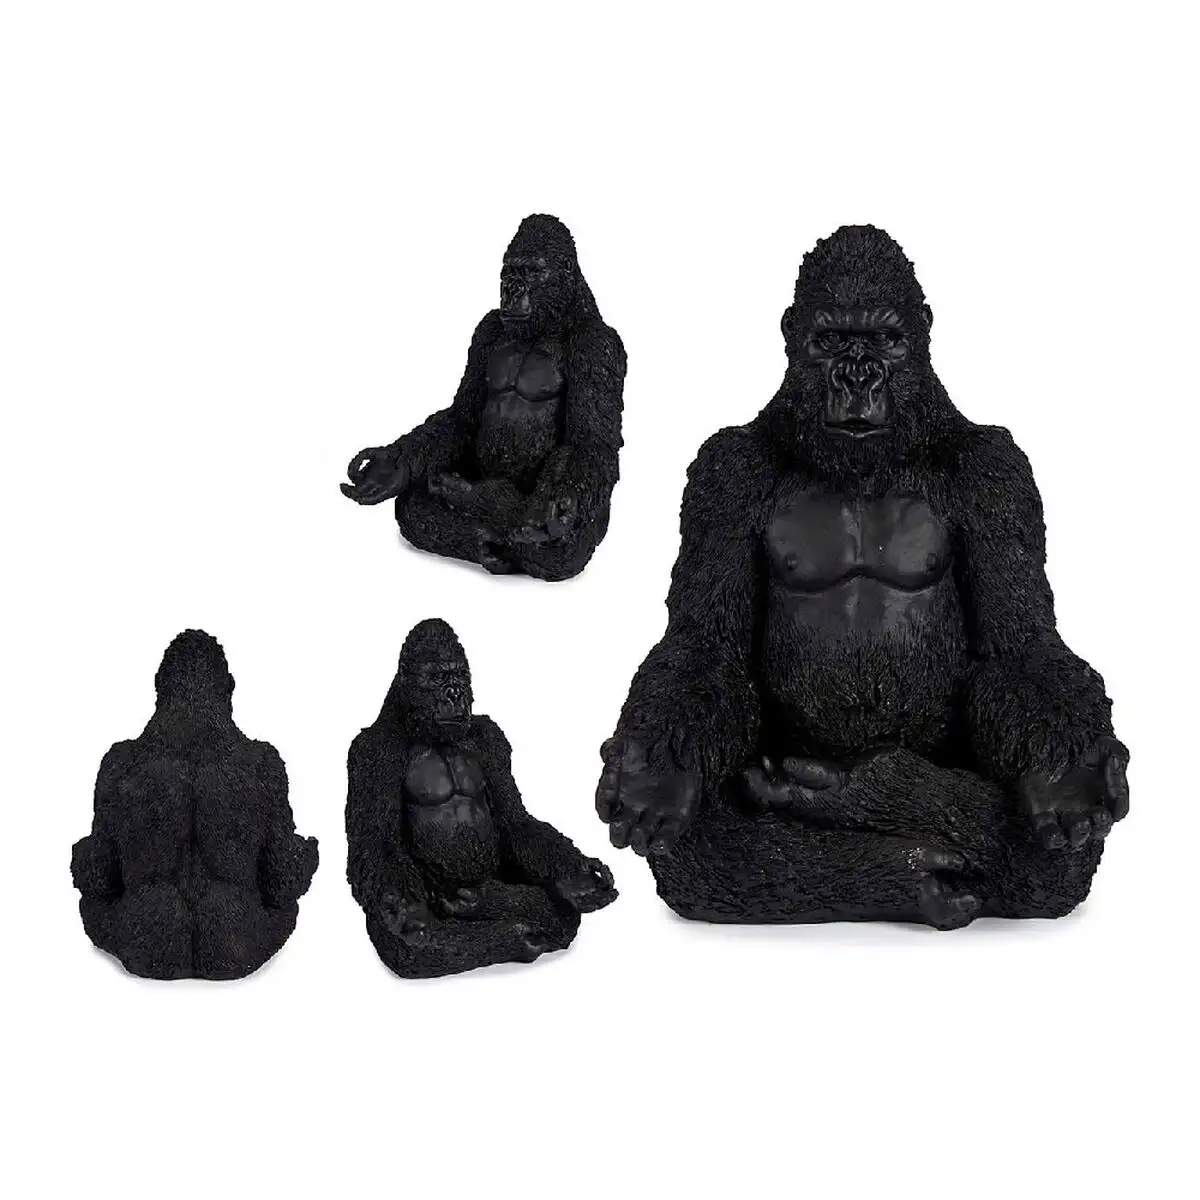 Figurine decorative gorille noir 19 x 26 5 x 22 cm_2265. DIAYTAR SENEGAL - L'Art de Vivre le Shopping Inspiré. Parcourez notre catalogue et choisissez des produits qui reflètent votre passion pour la beauté et l'authenticité.